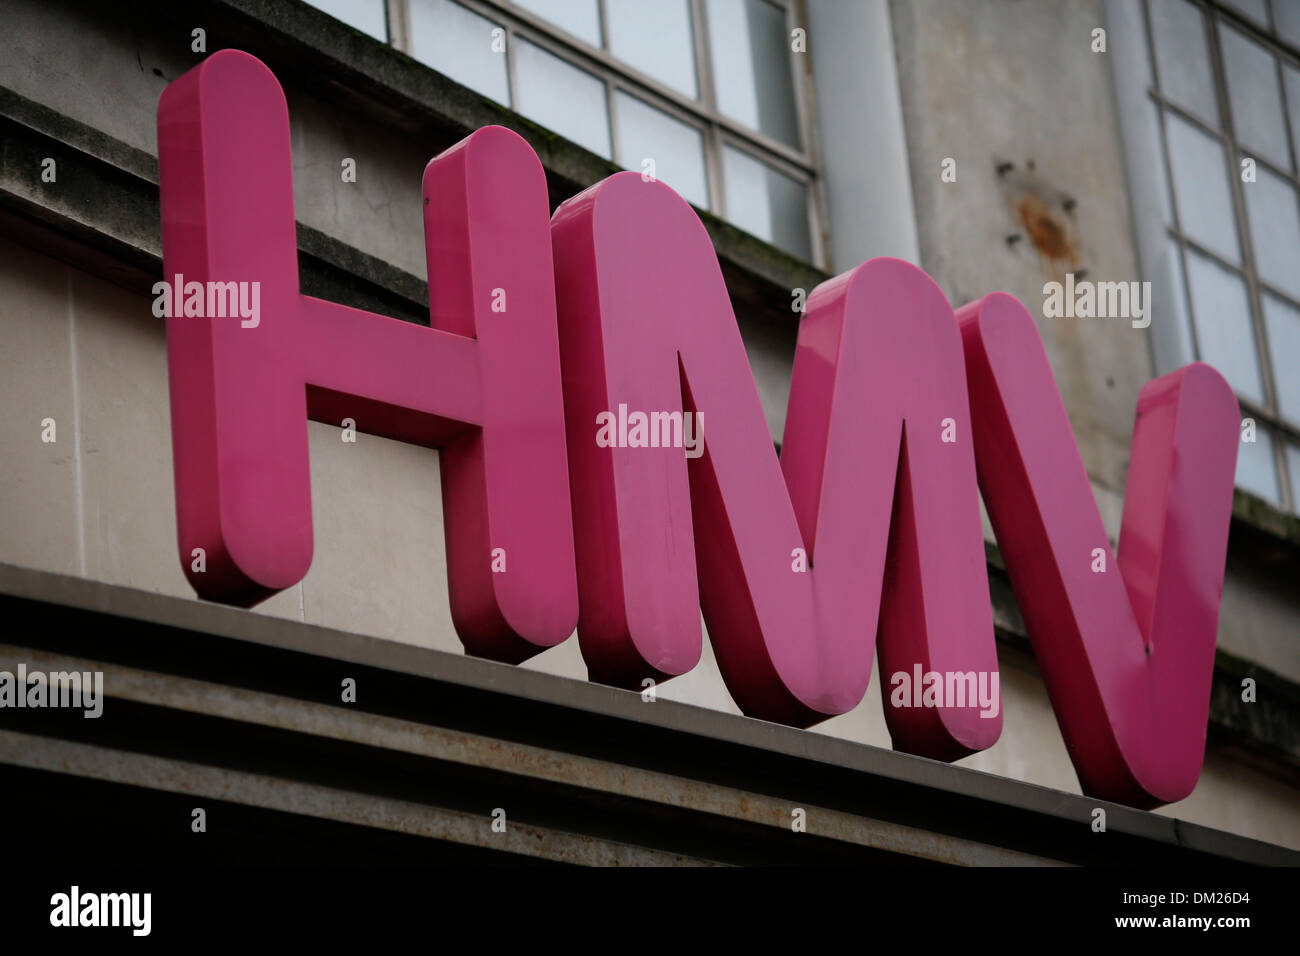 HMV store dans le centre de Londres 15 Janvier, 2013. Banque D'Images